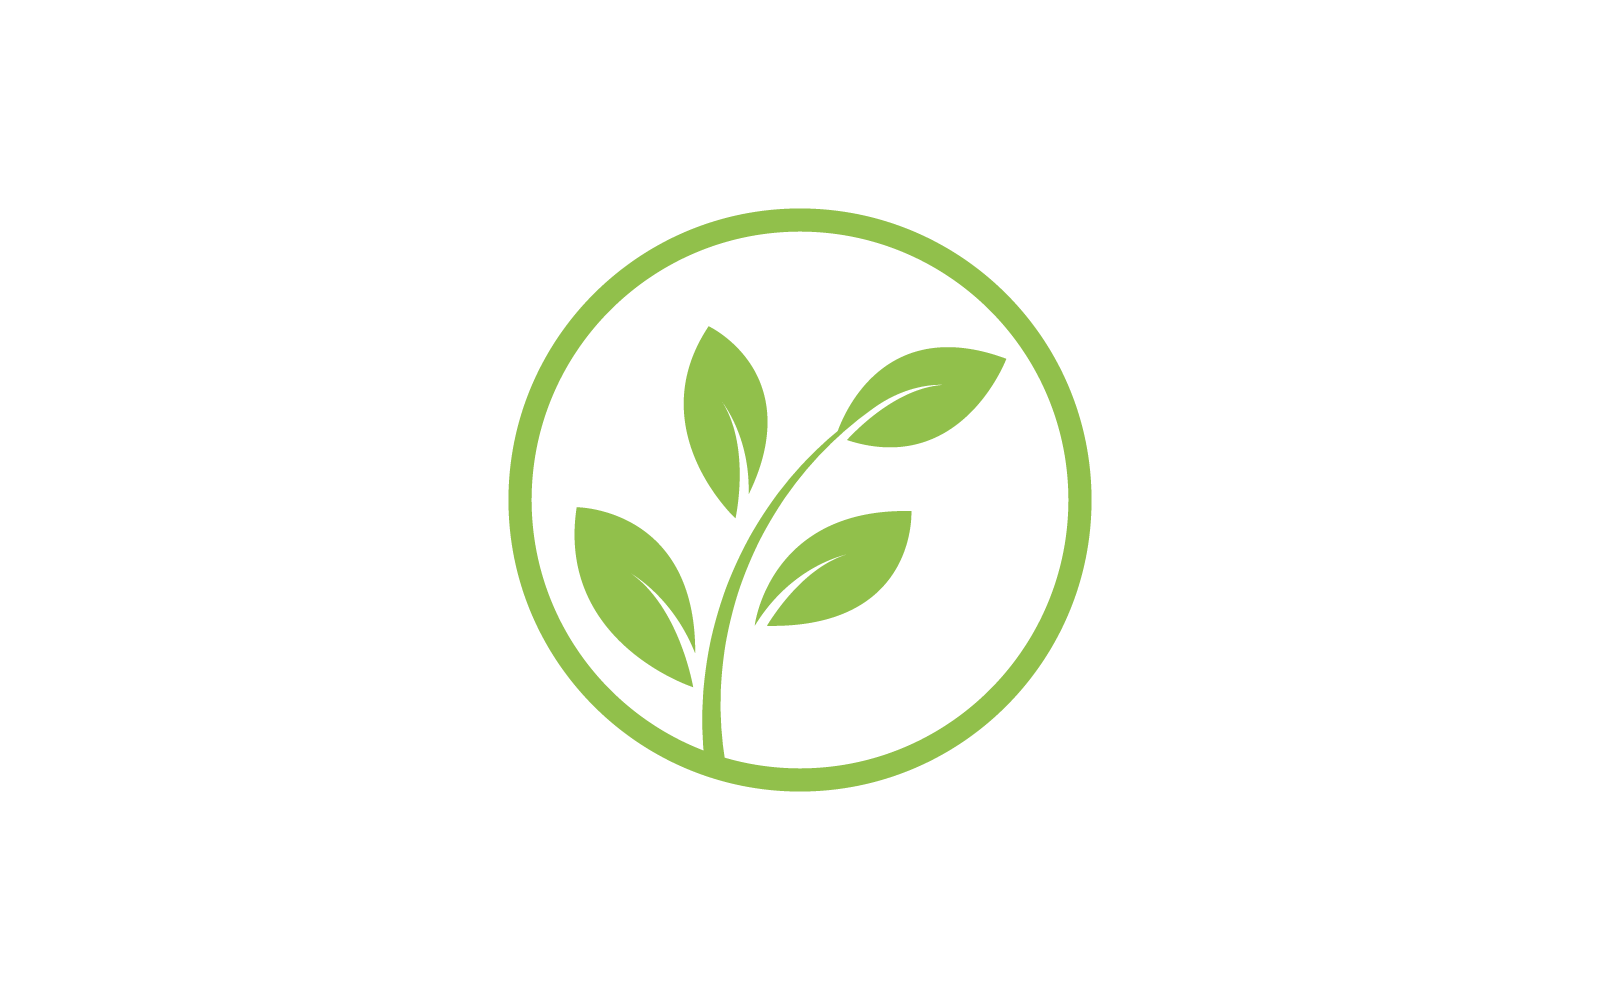 Green leaf design illustration vector template Logo Template